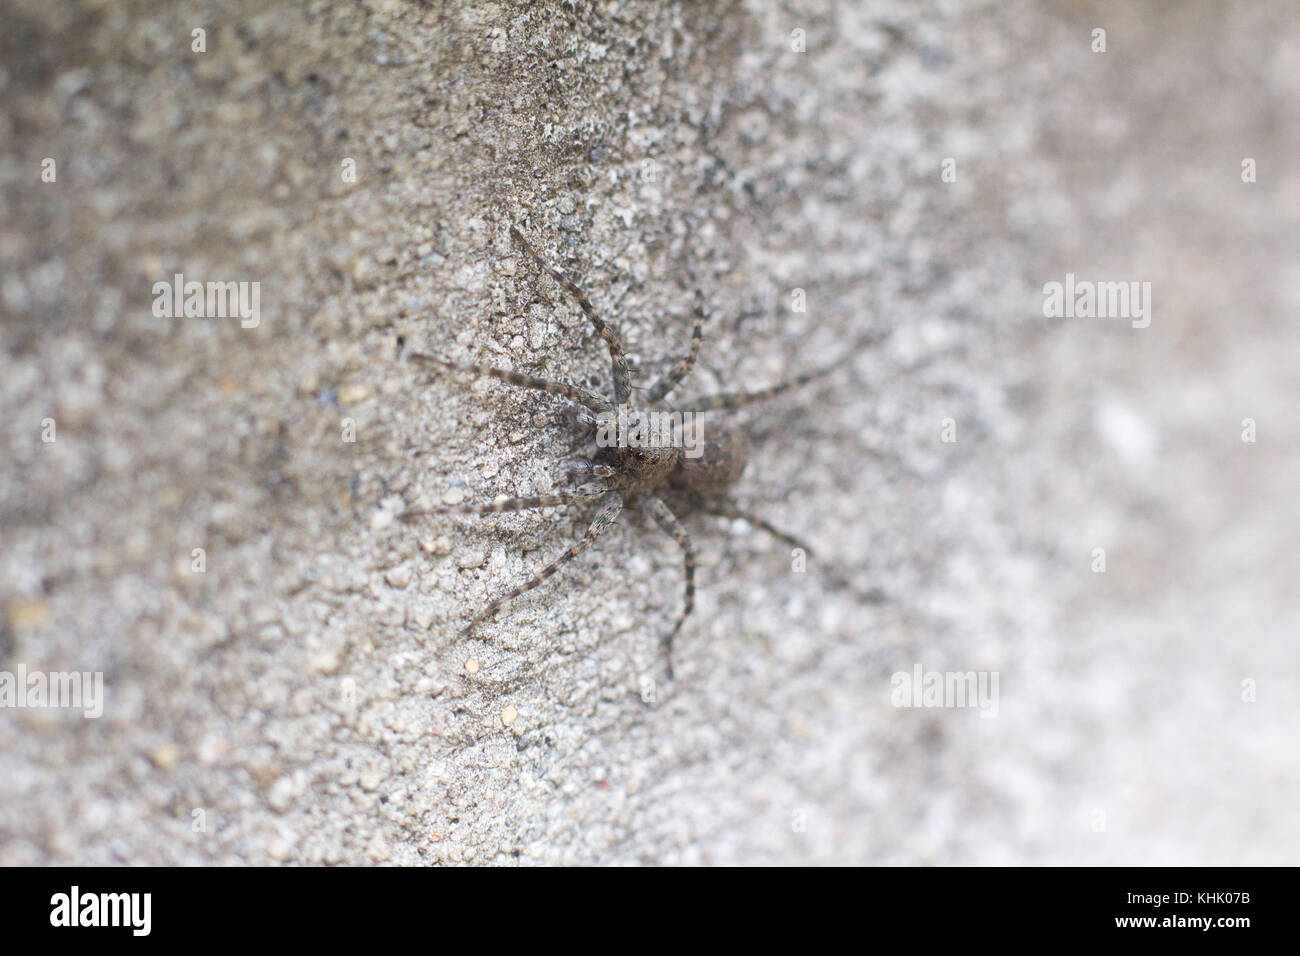 Schwarze Spinne an der Wand verschwommen wählen Sie Fokus, Tier spinne Makro Stockfoto